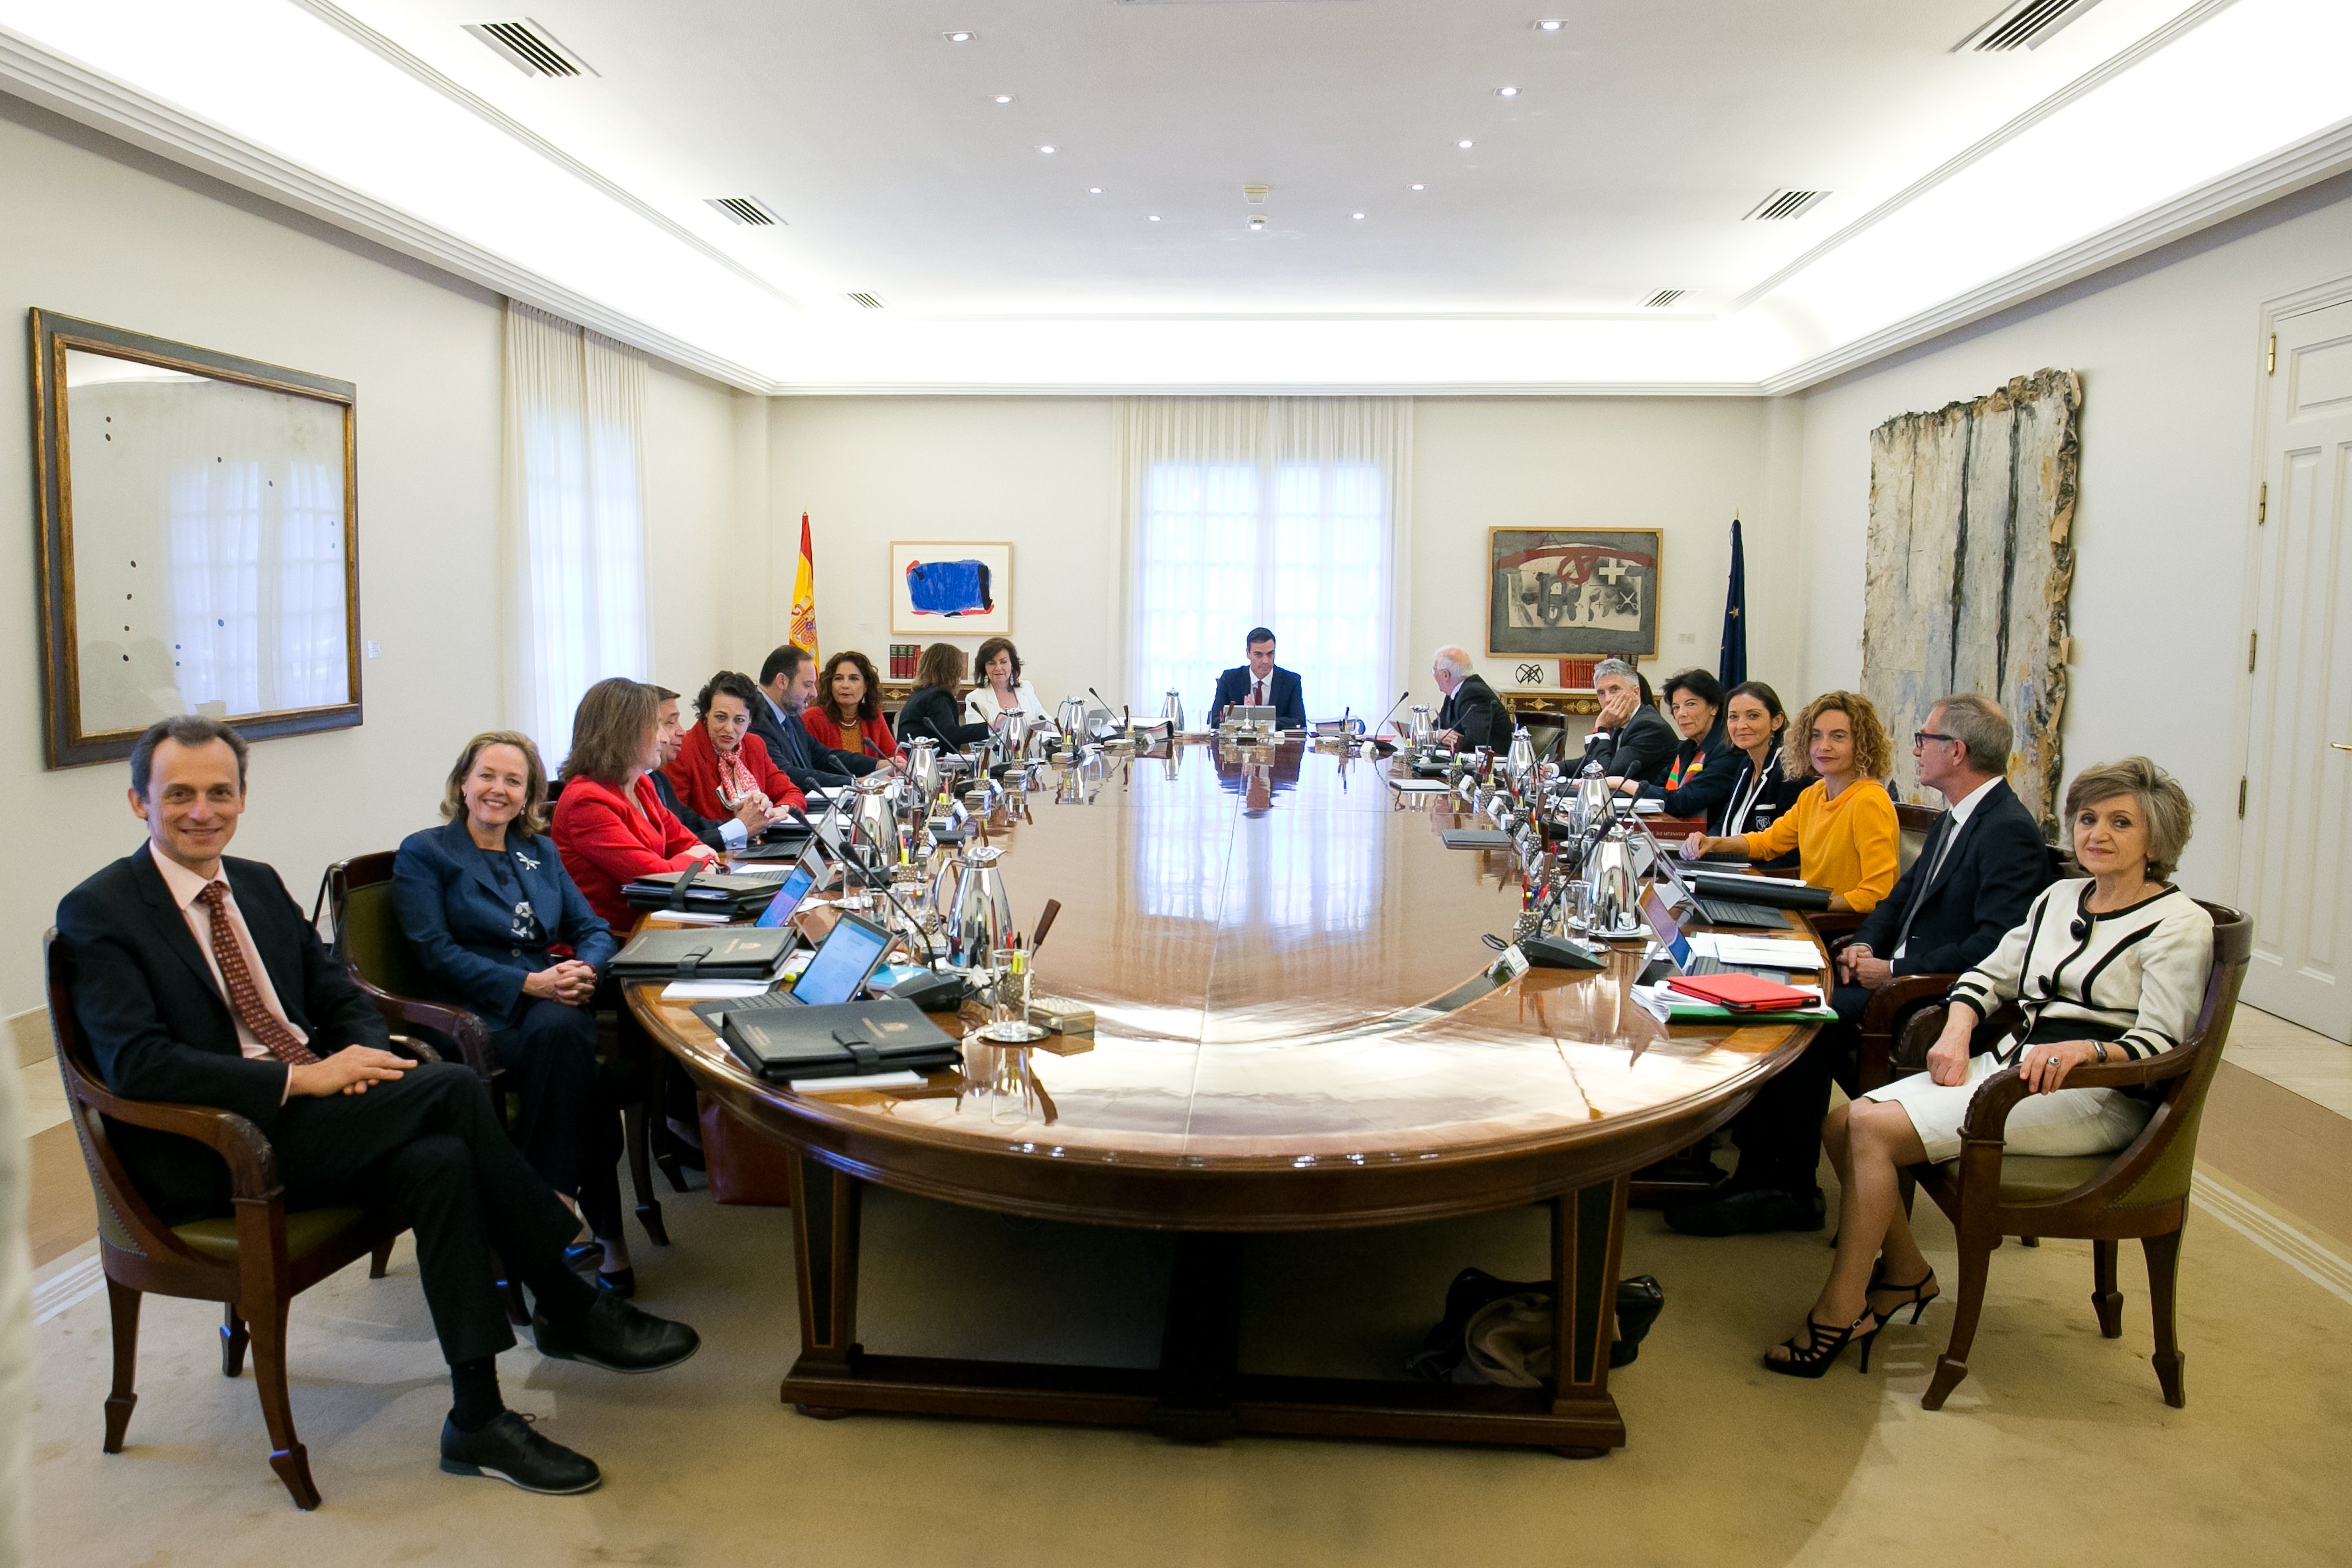 Et sembla bé la reunió del Consell de Ministres el 21-D a Barcelona?